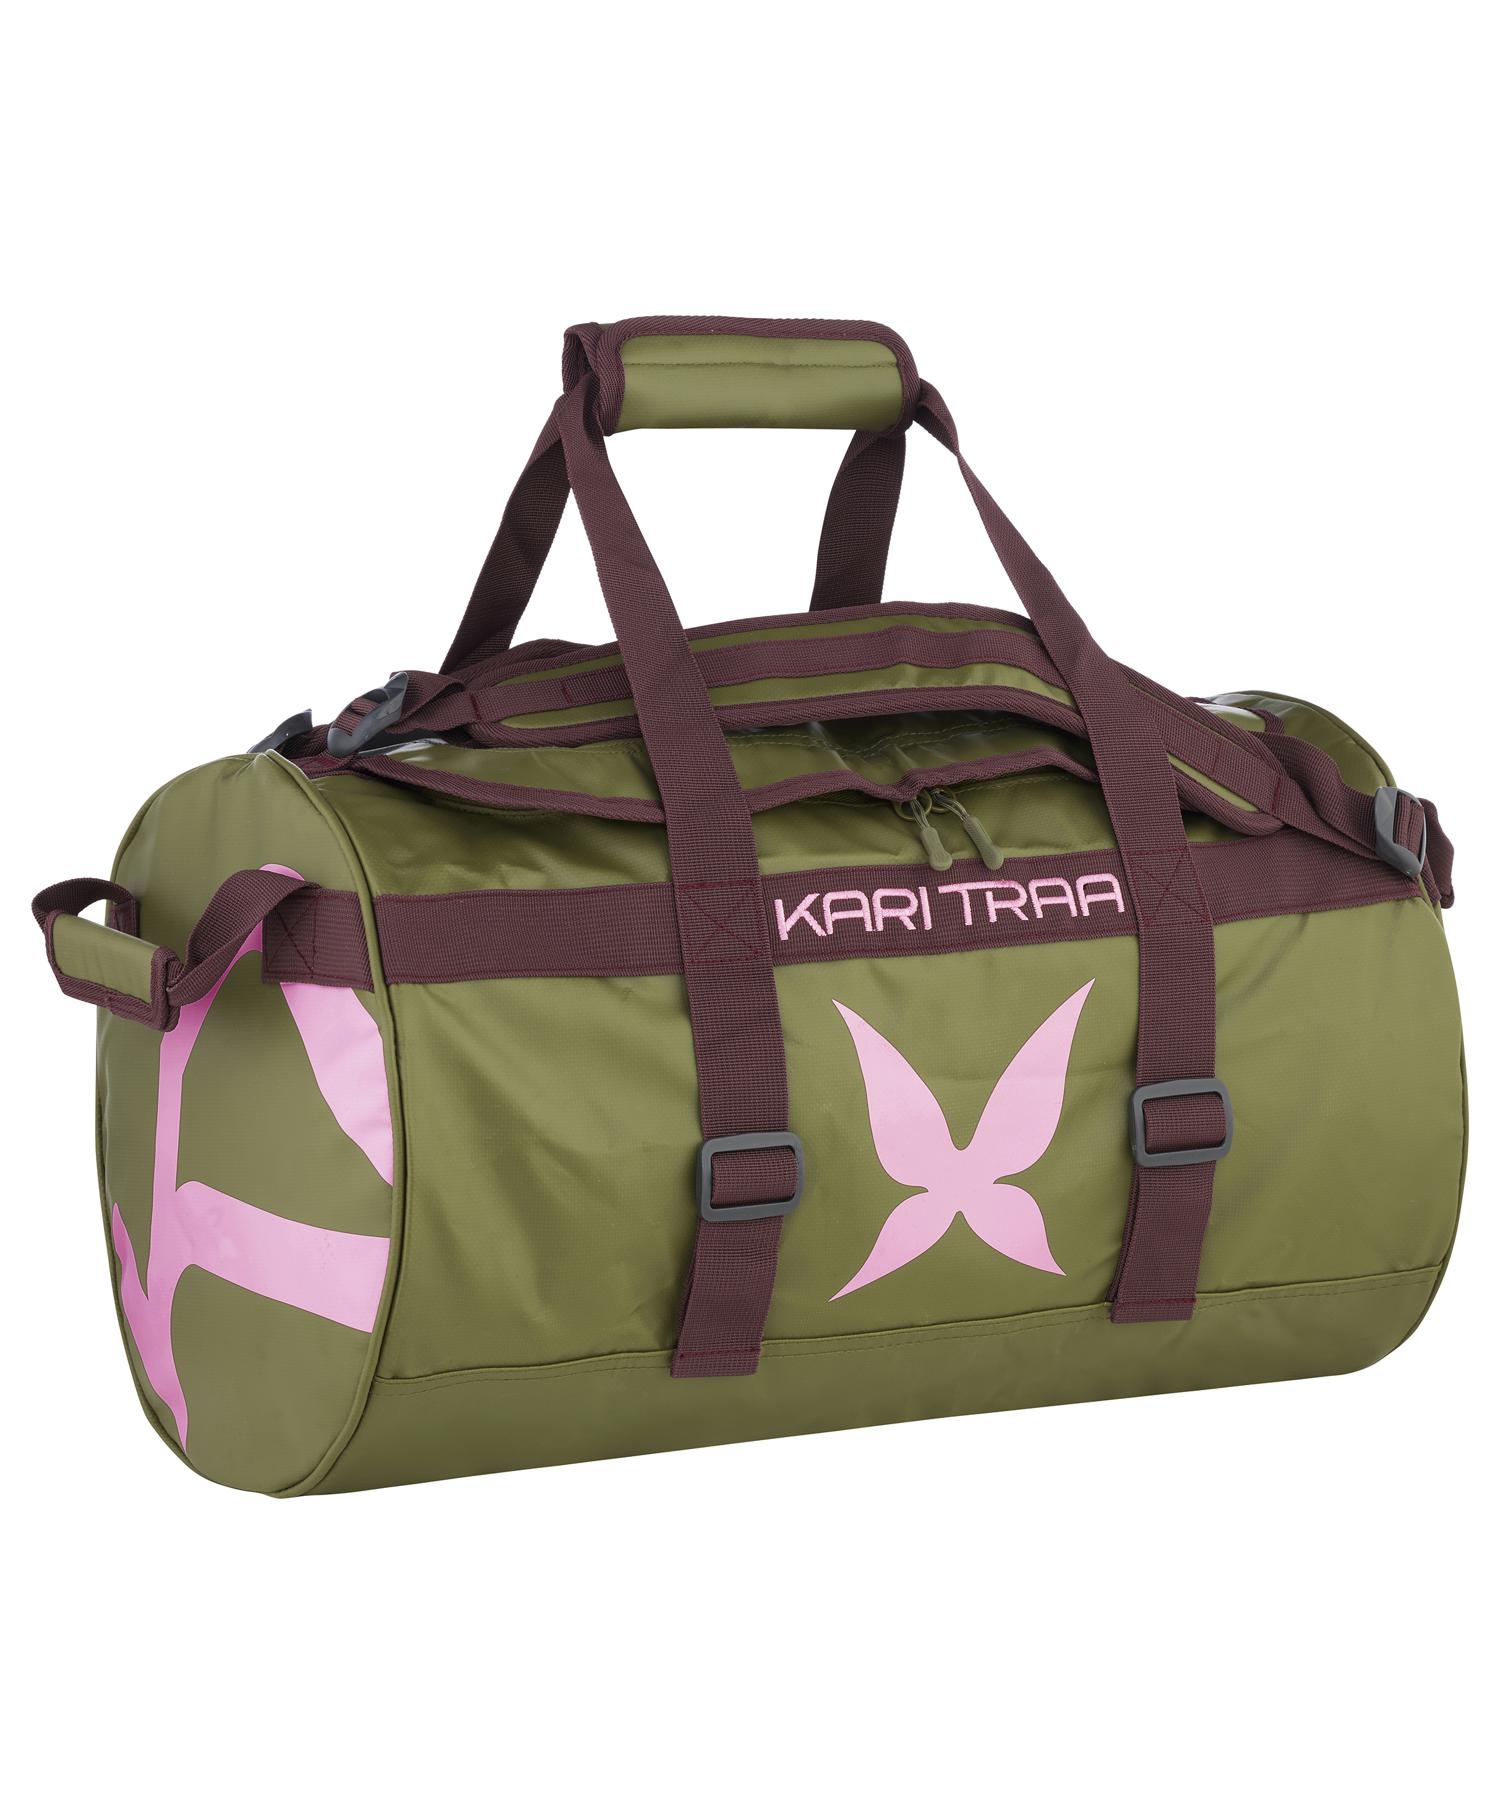 Kari Traa 30L bag